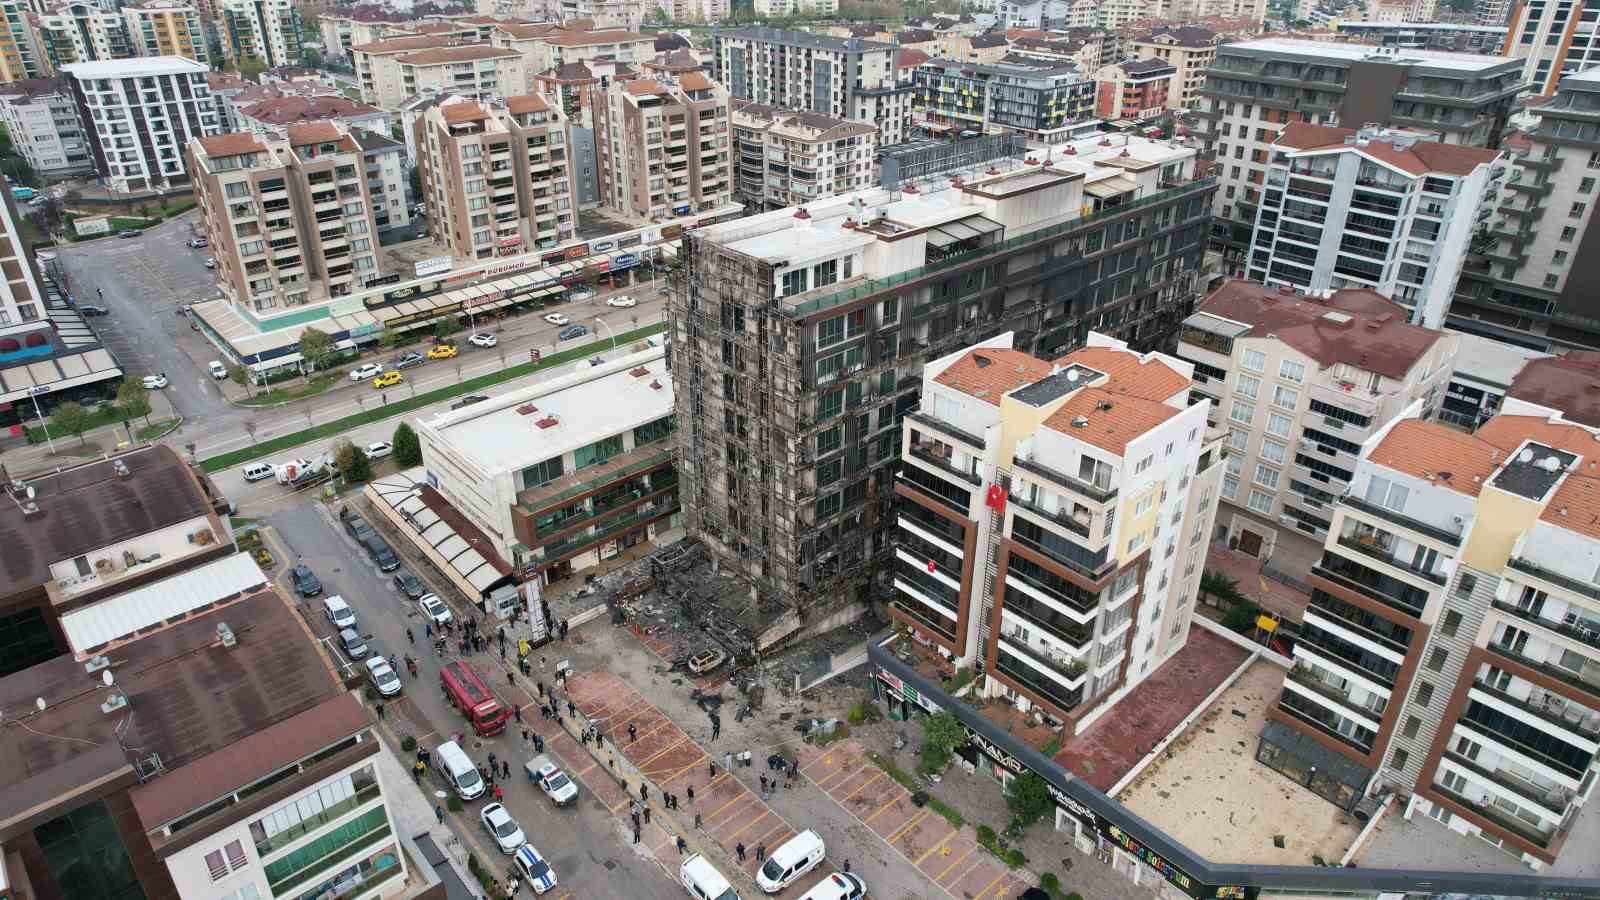 99 ofis bulunuyordu: 7 saatte söndürüldü! Korkunç manzara